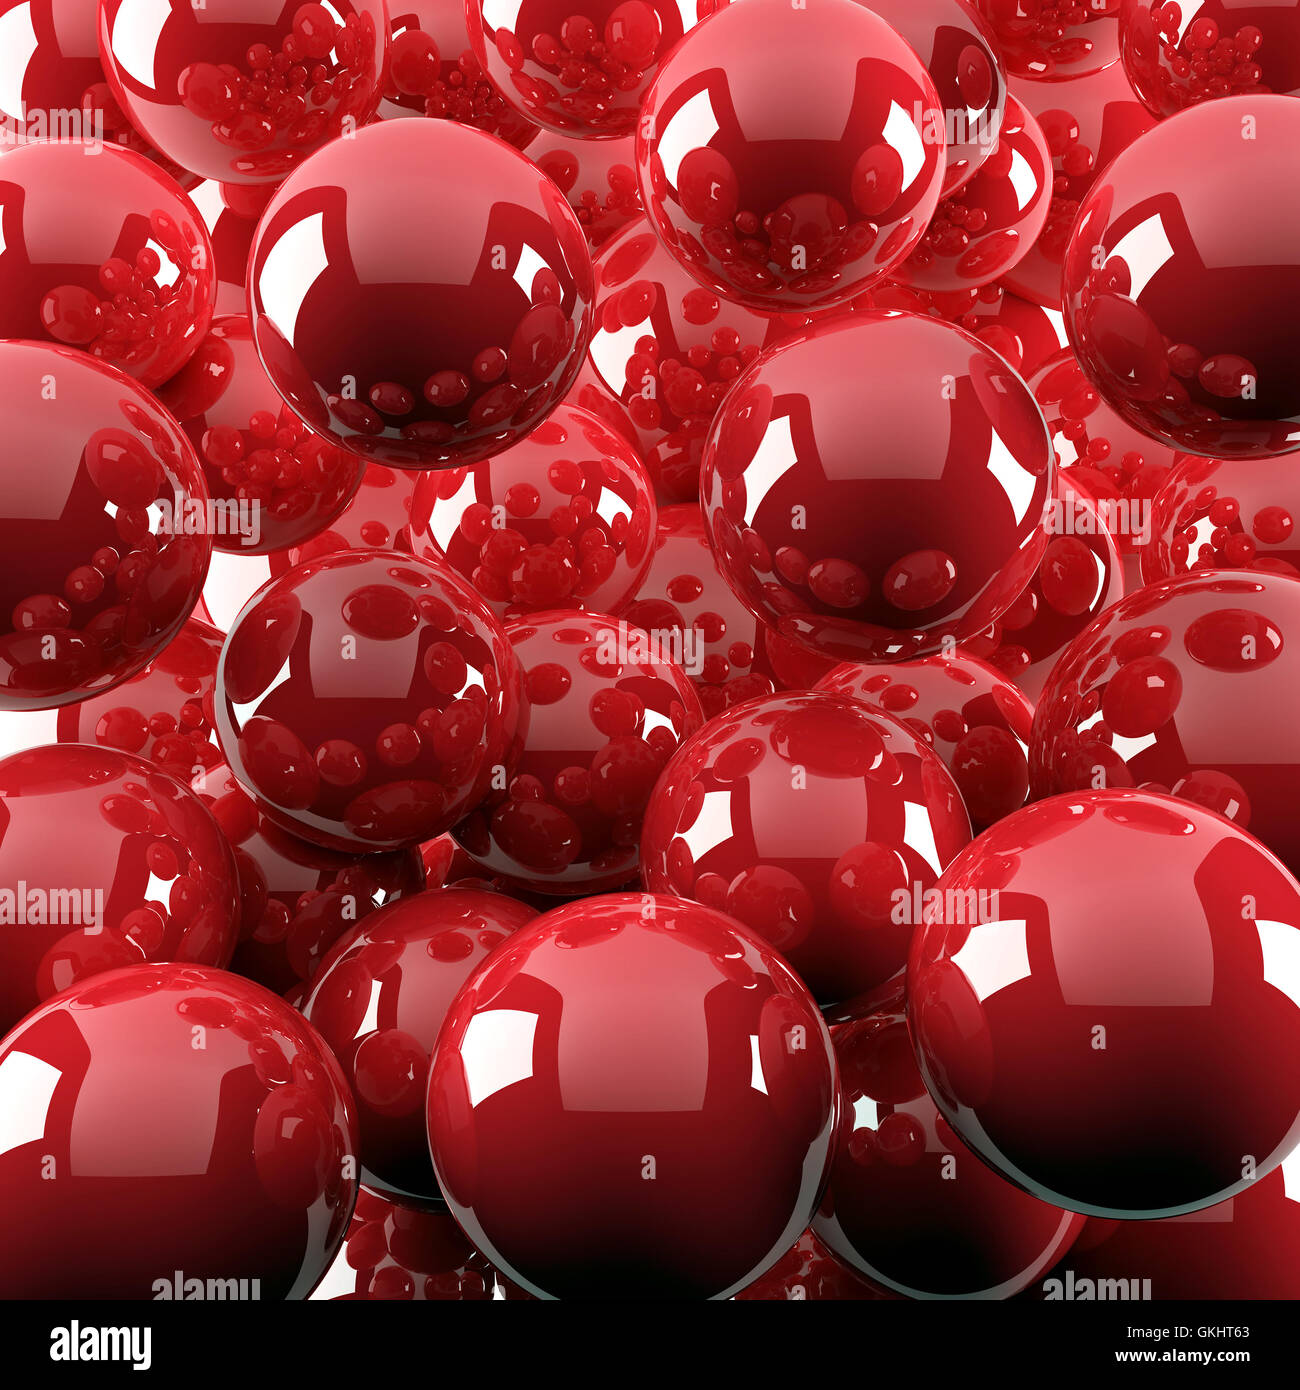 bright red shiny balls Stock Photo